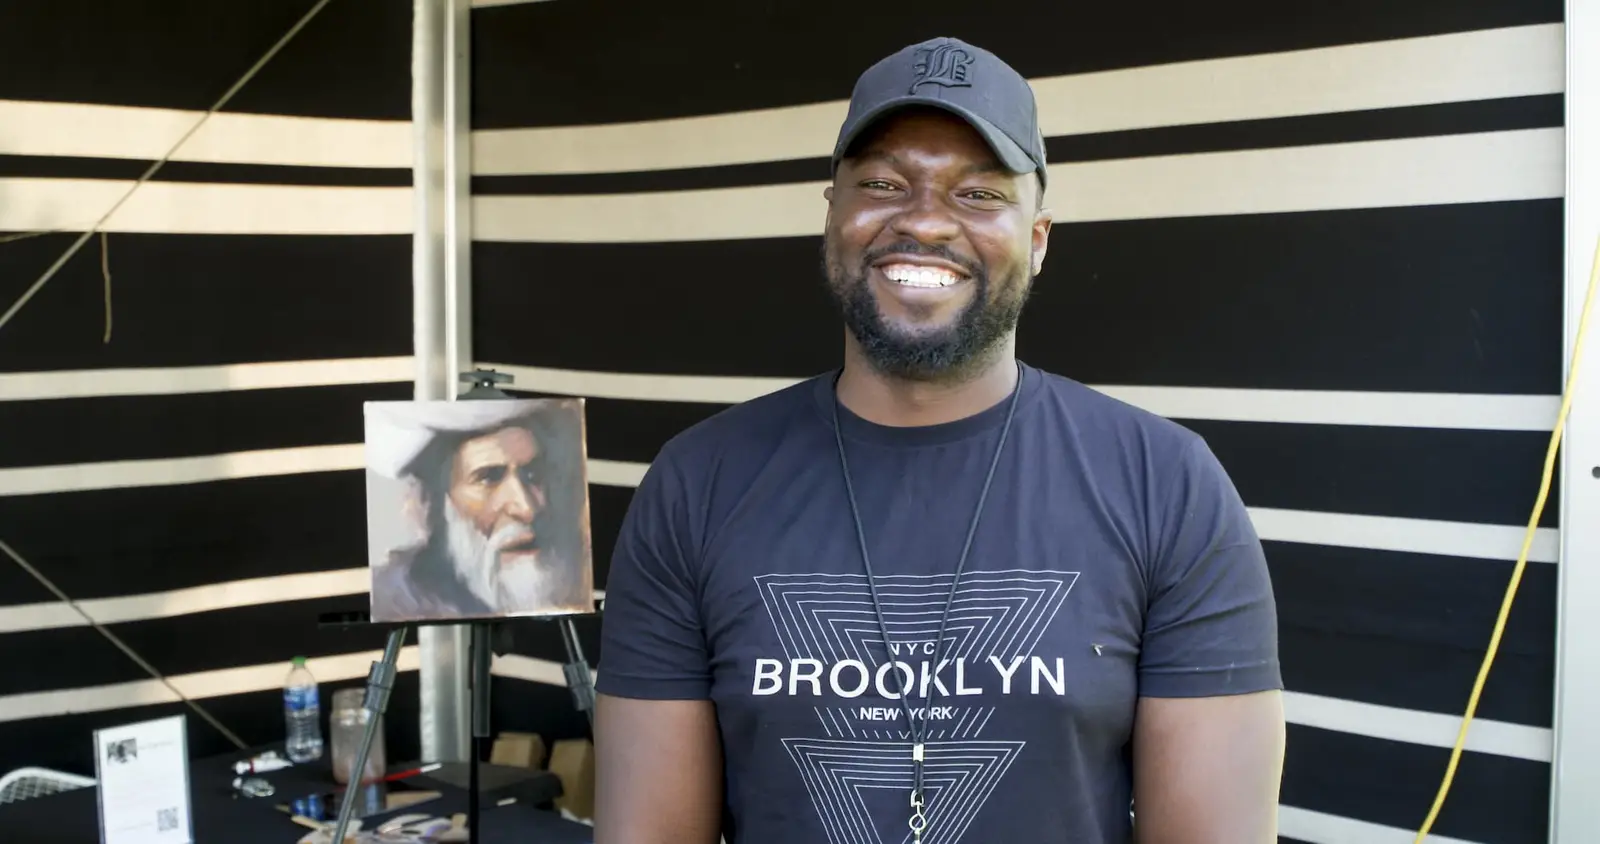 Man wearing a baseball cap and "Brooklyn" T-shirt smiling at the camera